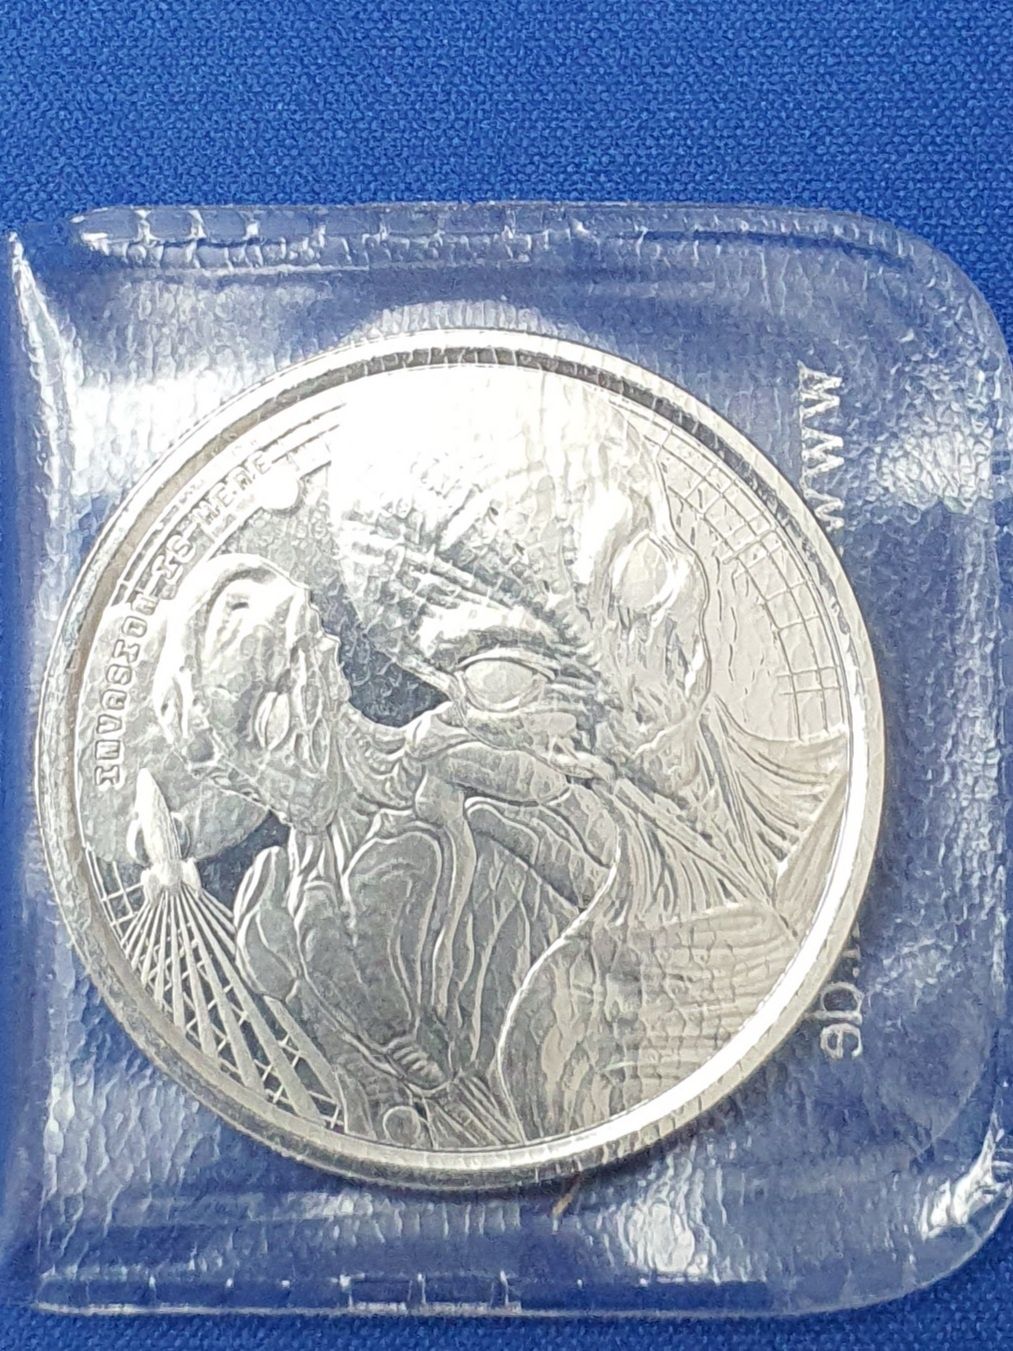 Monede argint pur 999 Kookaburra, Koala,Britannia,American Eagle